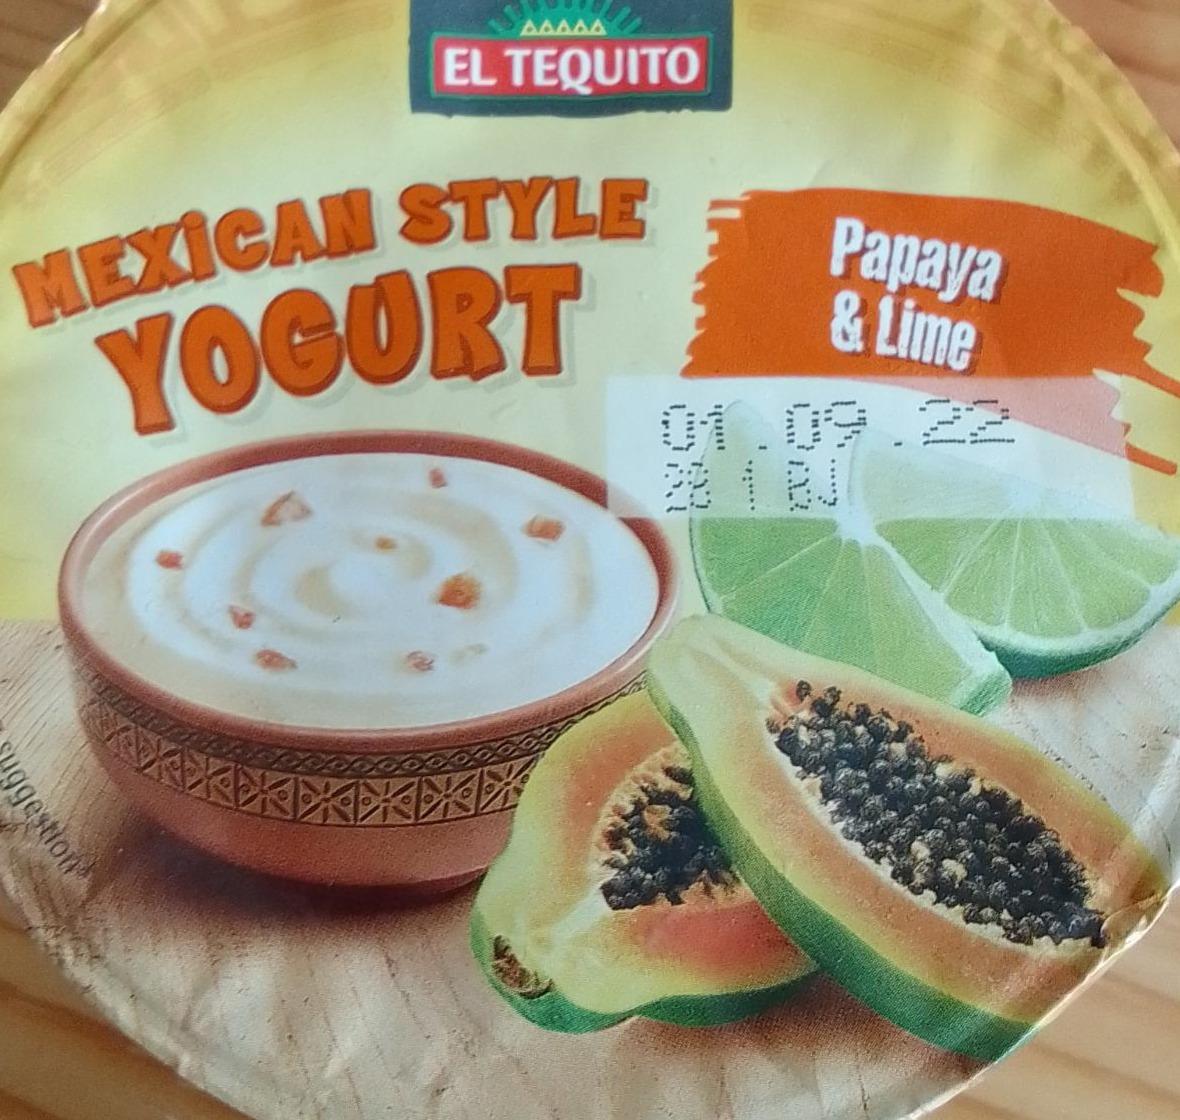 Zdjęcia - Maxican style yogurt El Tequito